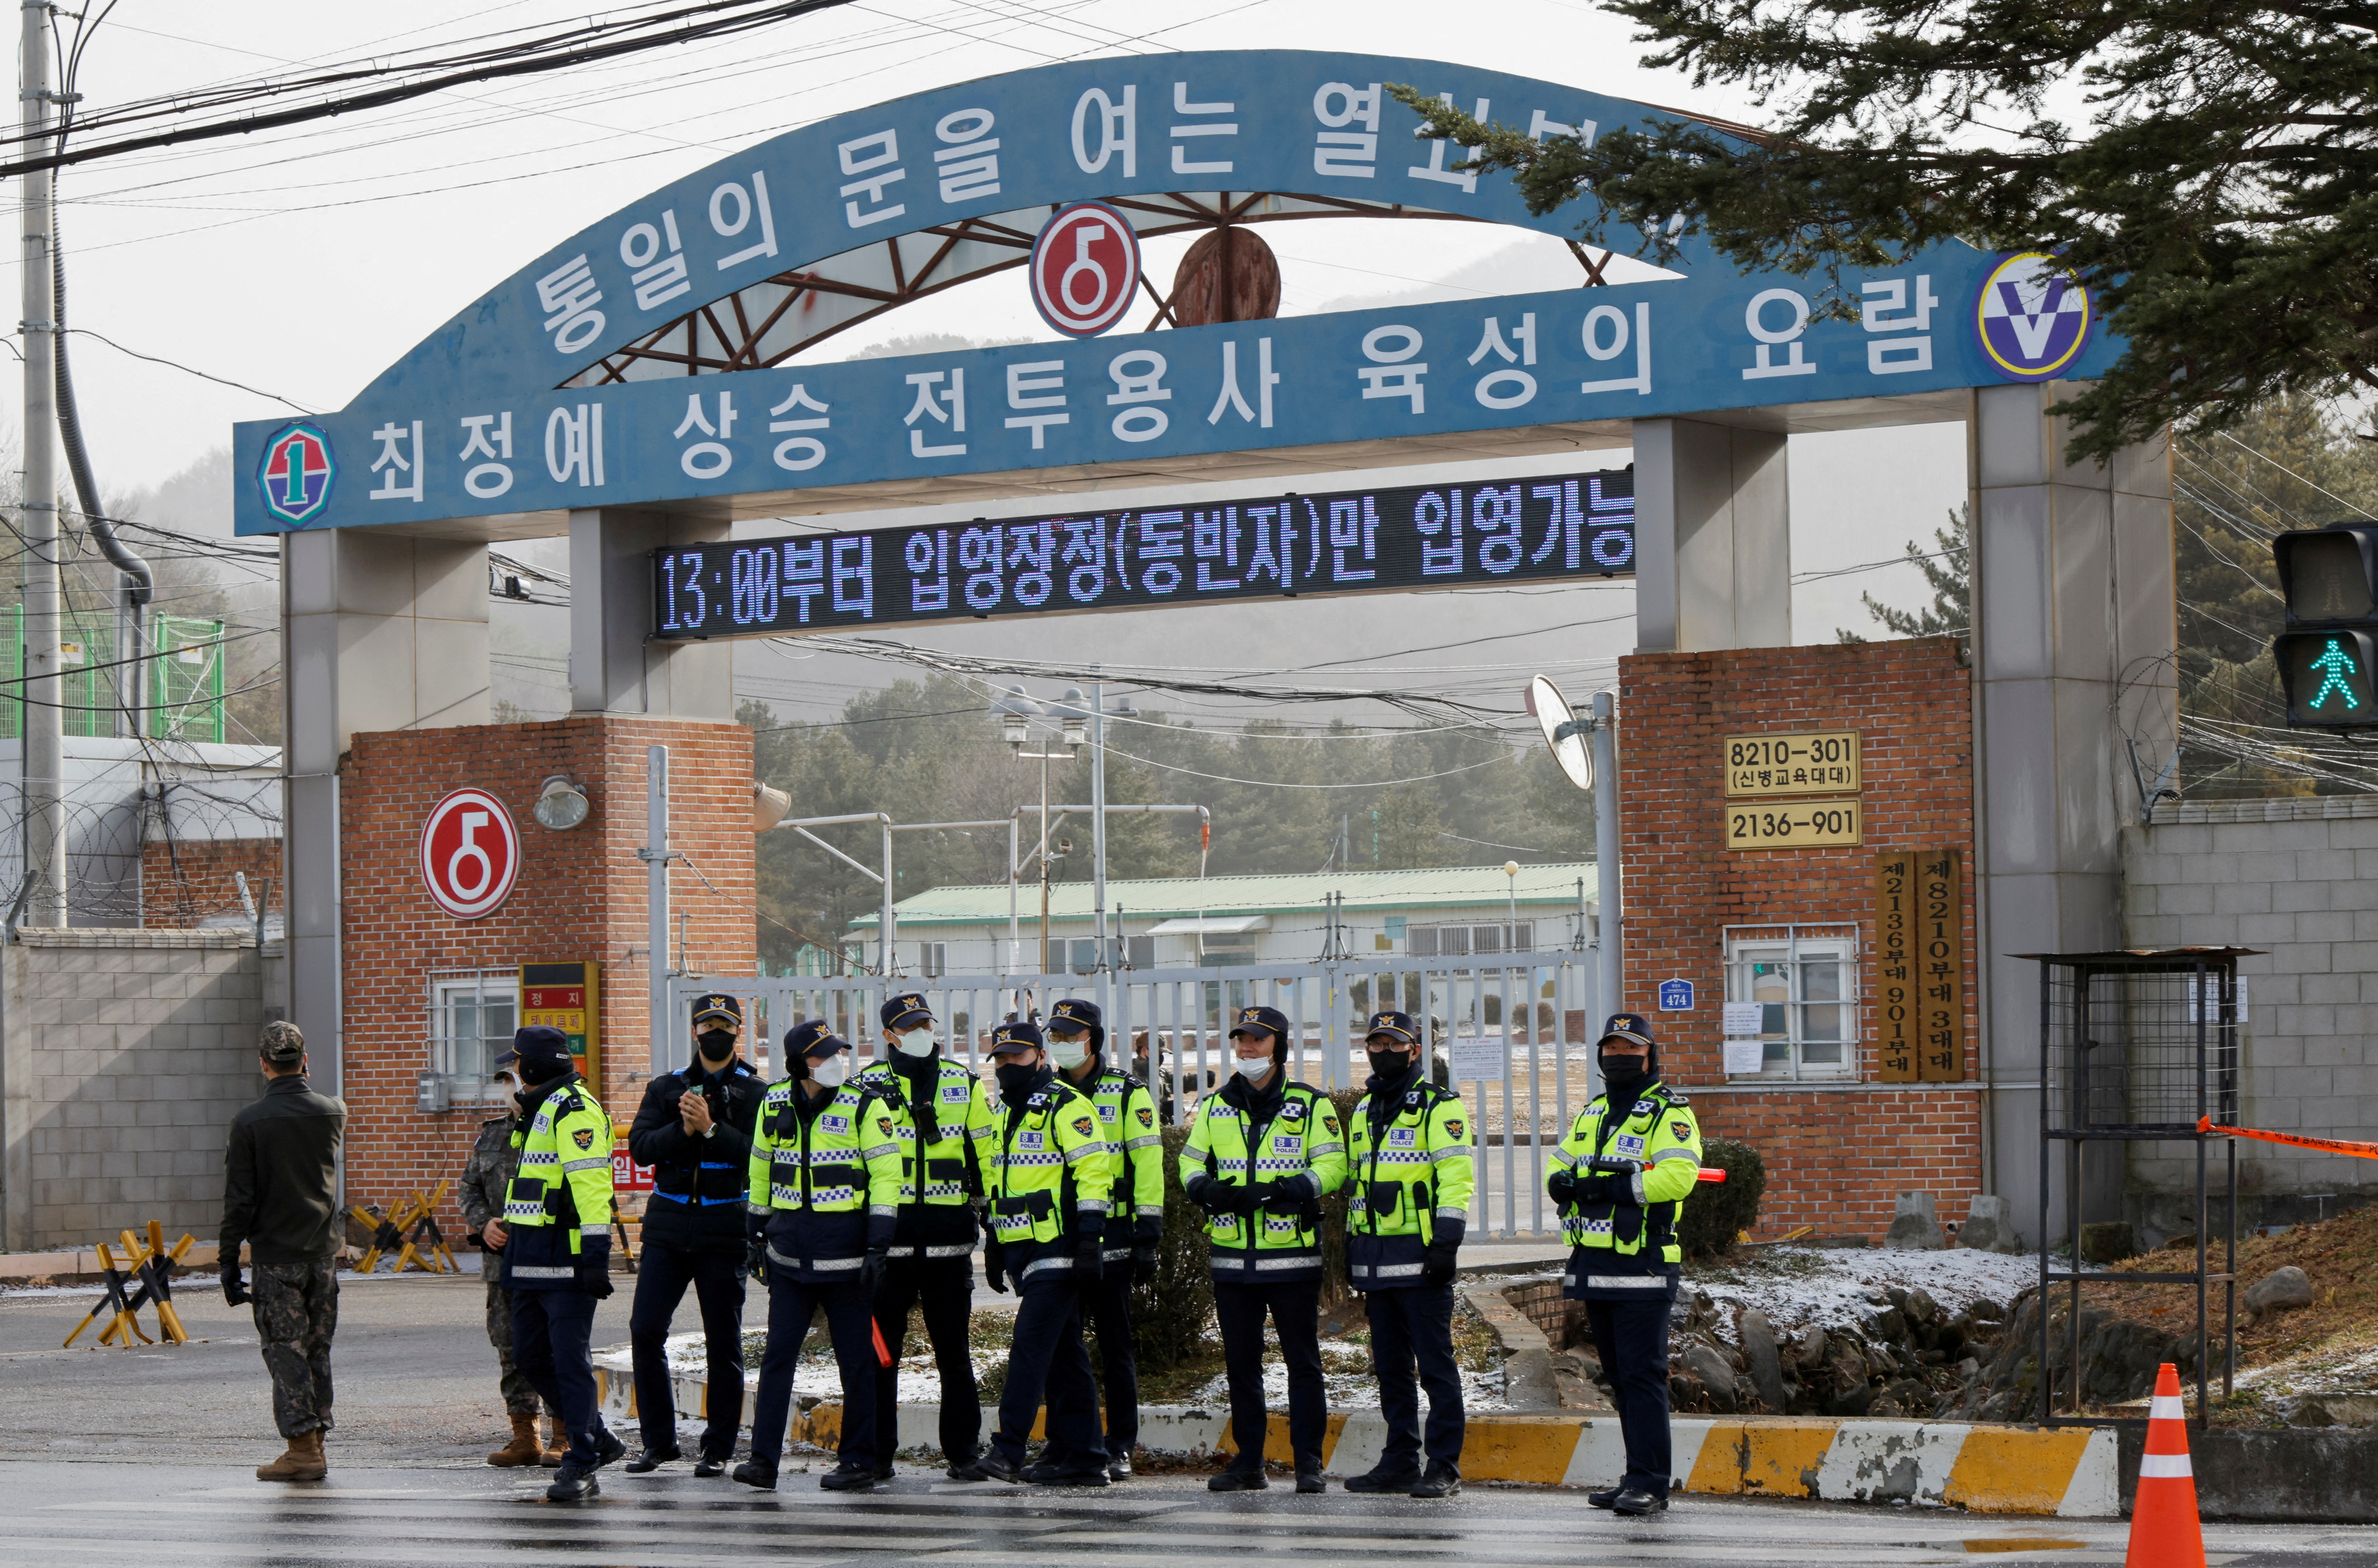 Oficiales de policía y soldados hacen guardia fuera de un campo de entrenamiento del ejército de Corea del Sur cerca de la zona desmilitarizada que separa las dos Coreas antes de la llegada de Jin, el miembro más antiguo de la banda de K-pop BTS, en Yeoncheon, Corea del Sur, el 13 de diciembre de 2022. REUTERS/ Heo corrió
